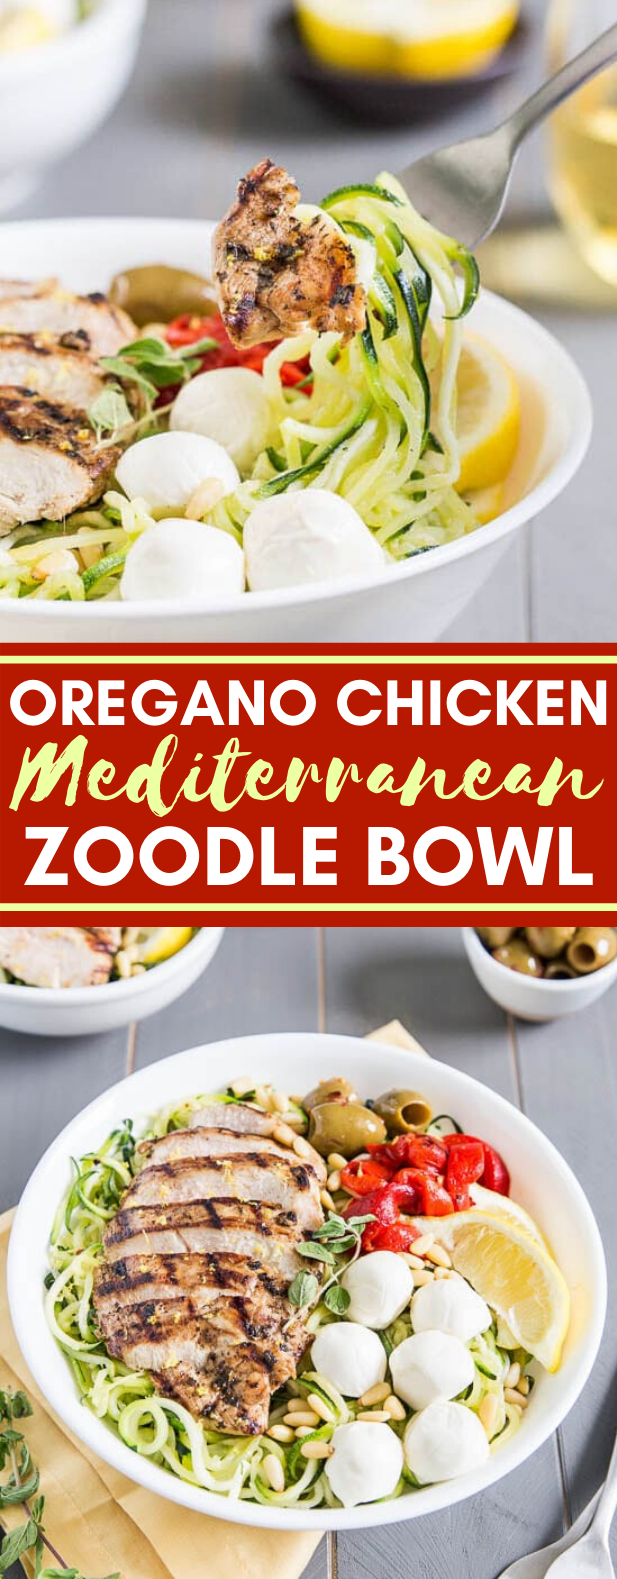 Oregano Chicken Mediterranean Zoodle Bowl #healthy #veggies #mediterranean #noodles #diet